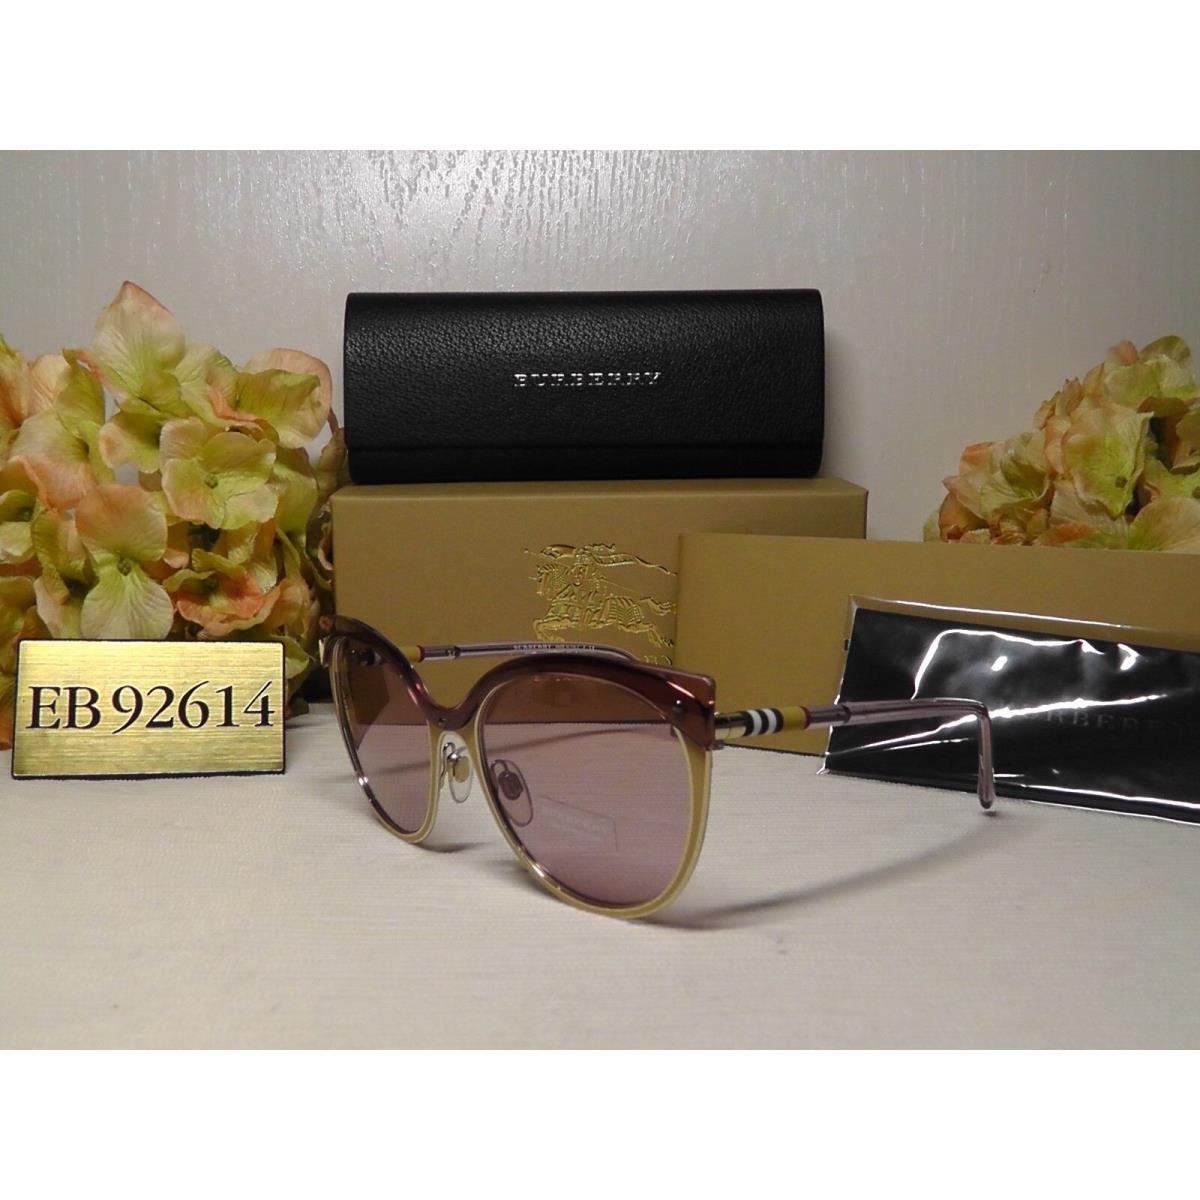 Burberry sunglasses  - Beige/Brushed/ Gold-tone Frame, Light Pink Lens 1